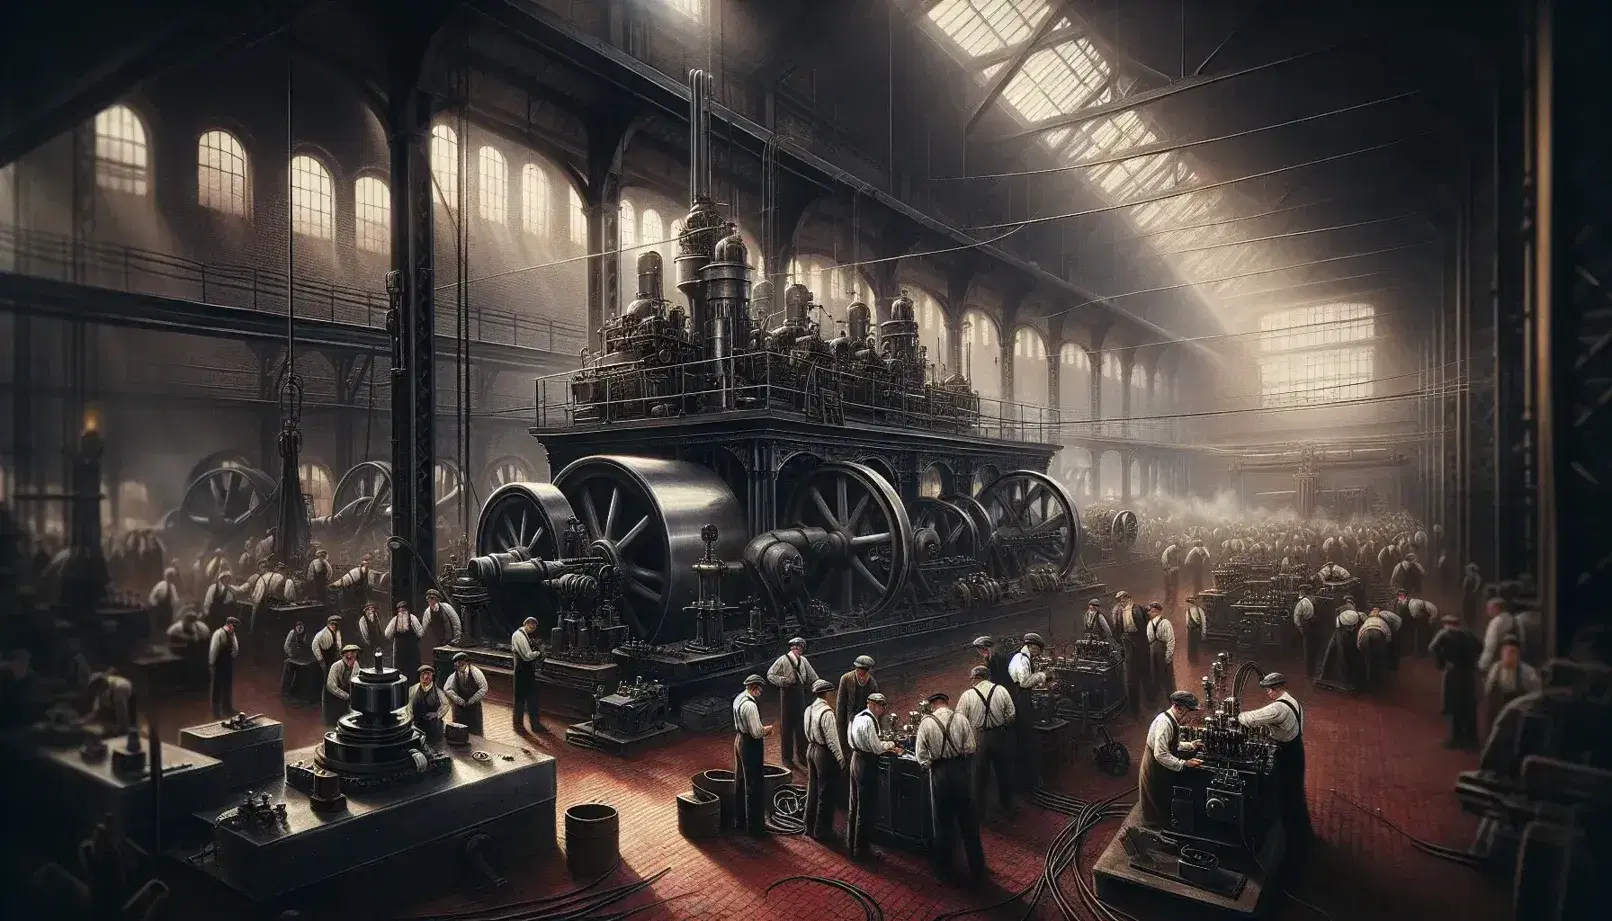 Officina industriale d'epoca con macchina a vapore, operai al lavoro e scienziati che osservano un motore elettrico.